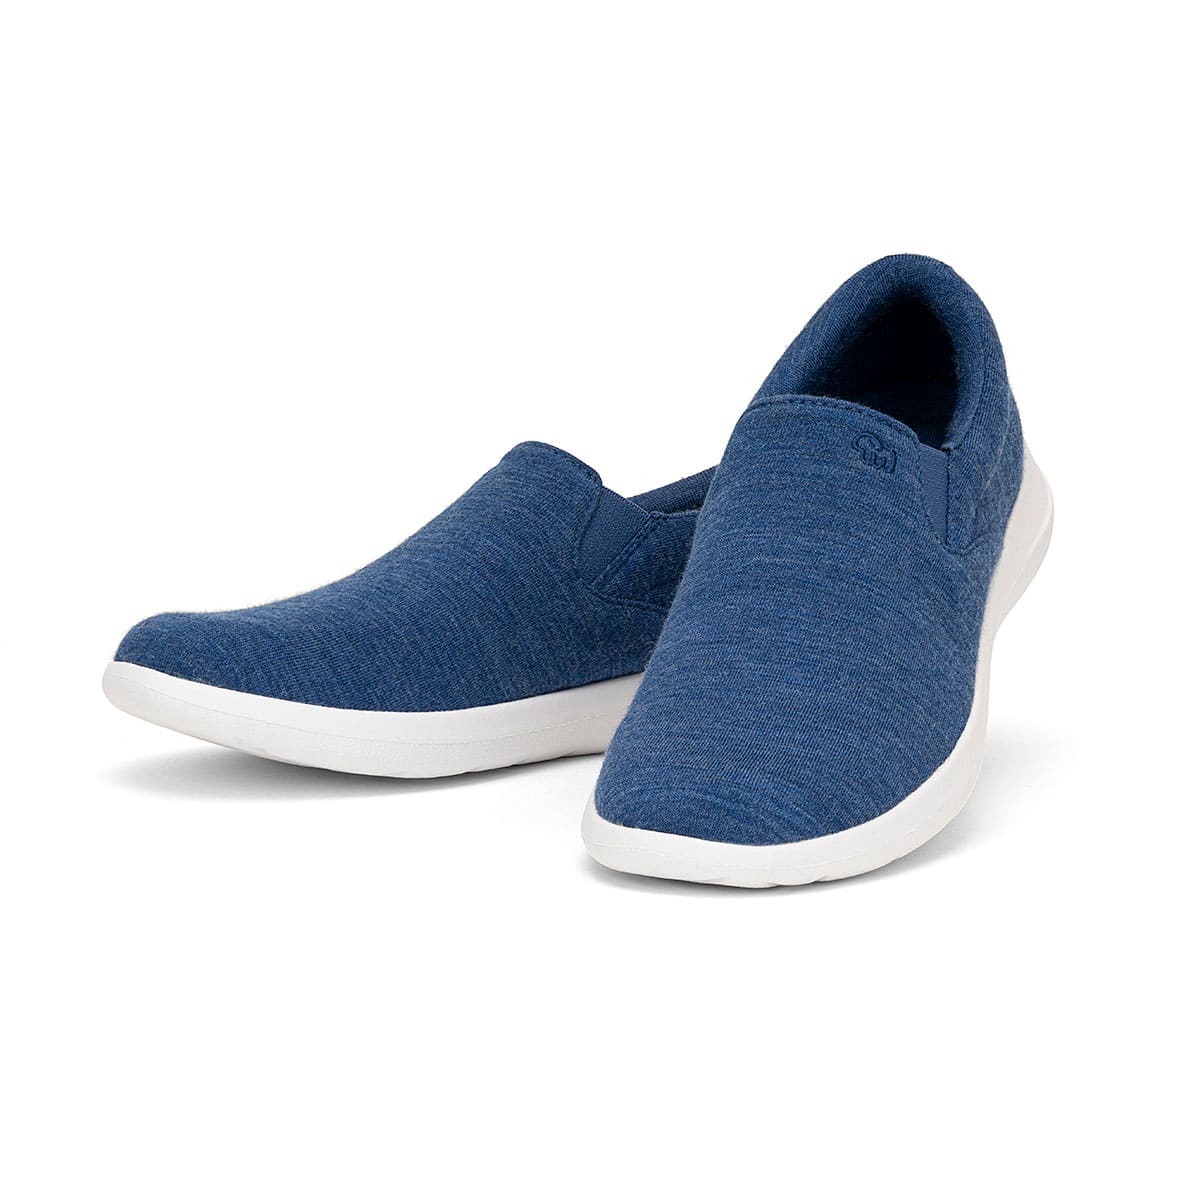 Chaussures Mérinos bleu jean pour homme Slip On Paire